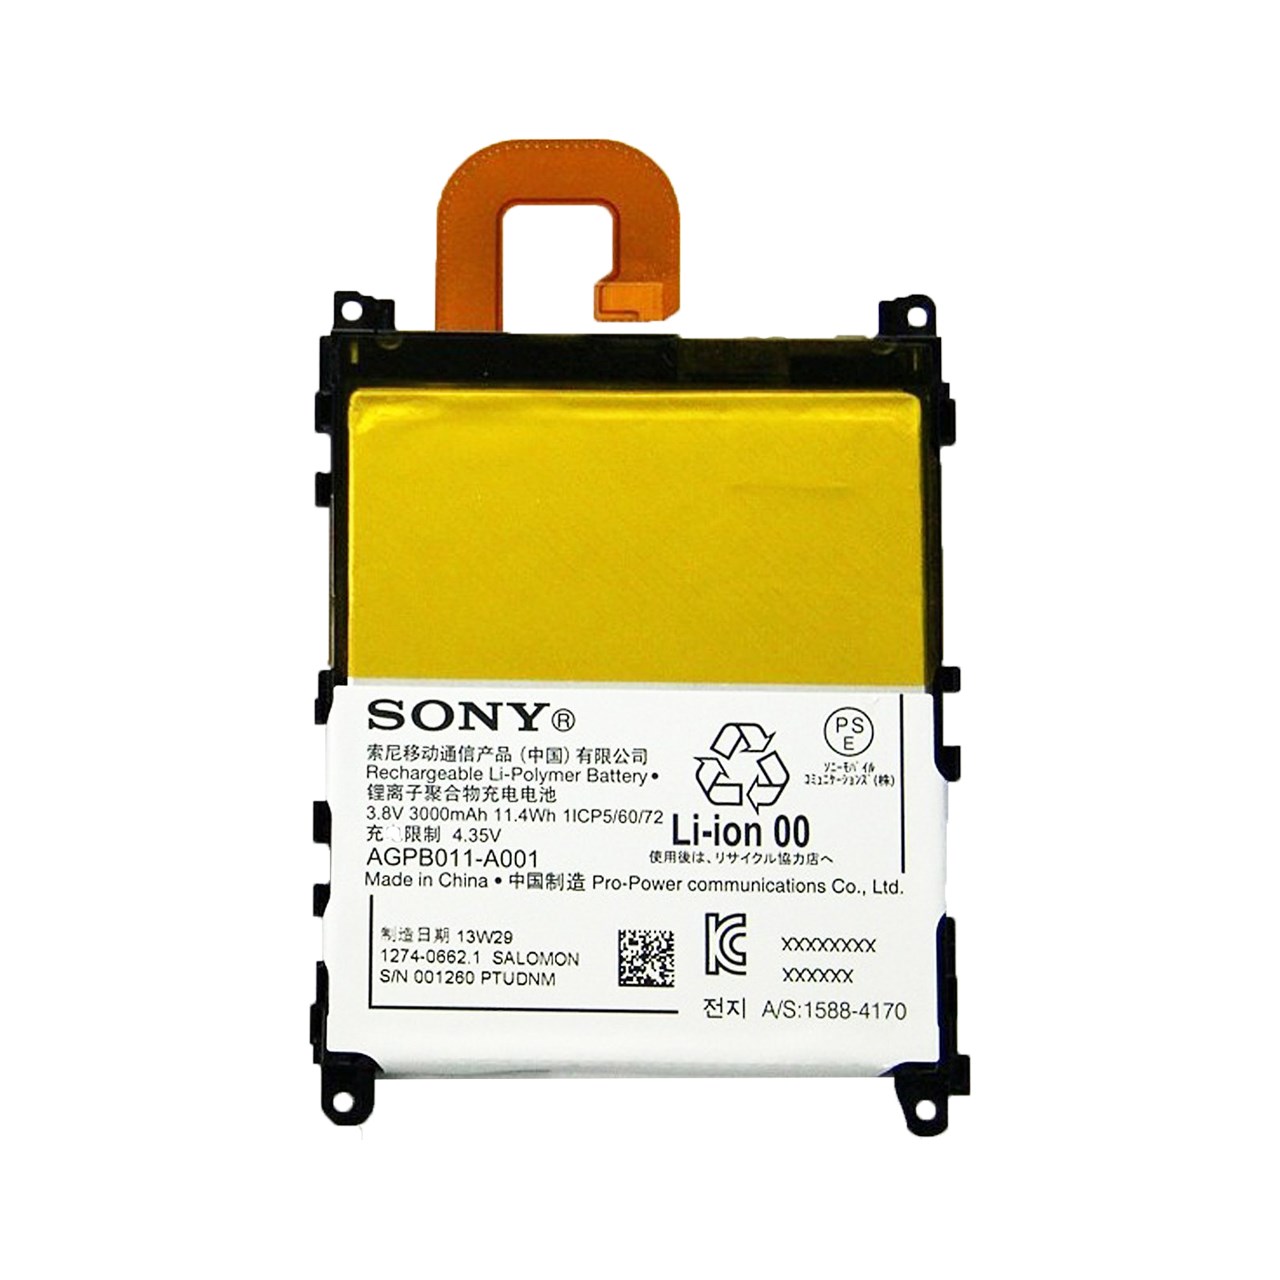 باتری گوشی مدل LIS1525ERPC مناسب برای گوشی سونی Xperia Z1